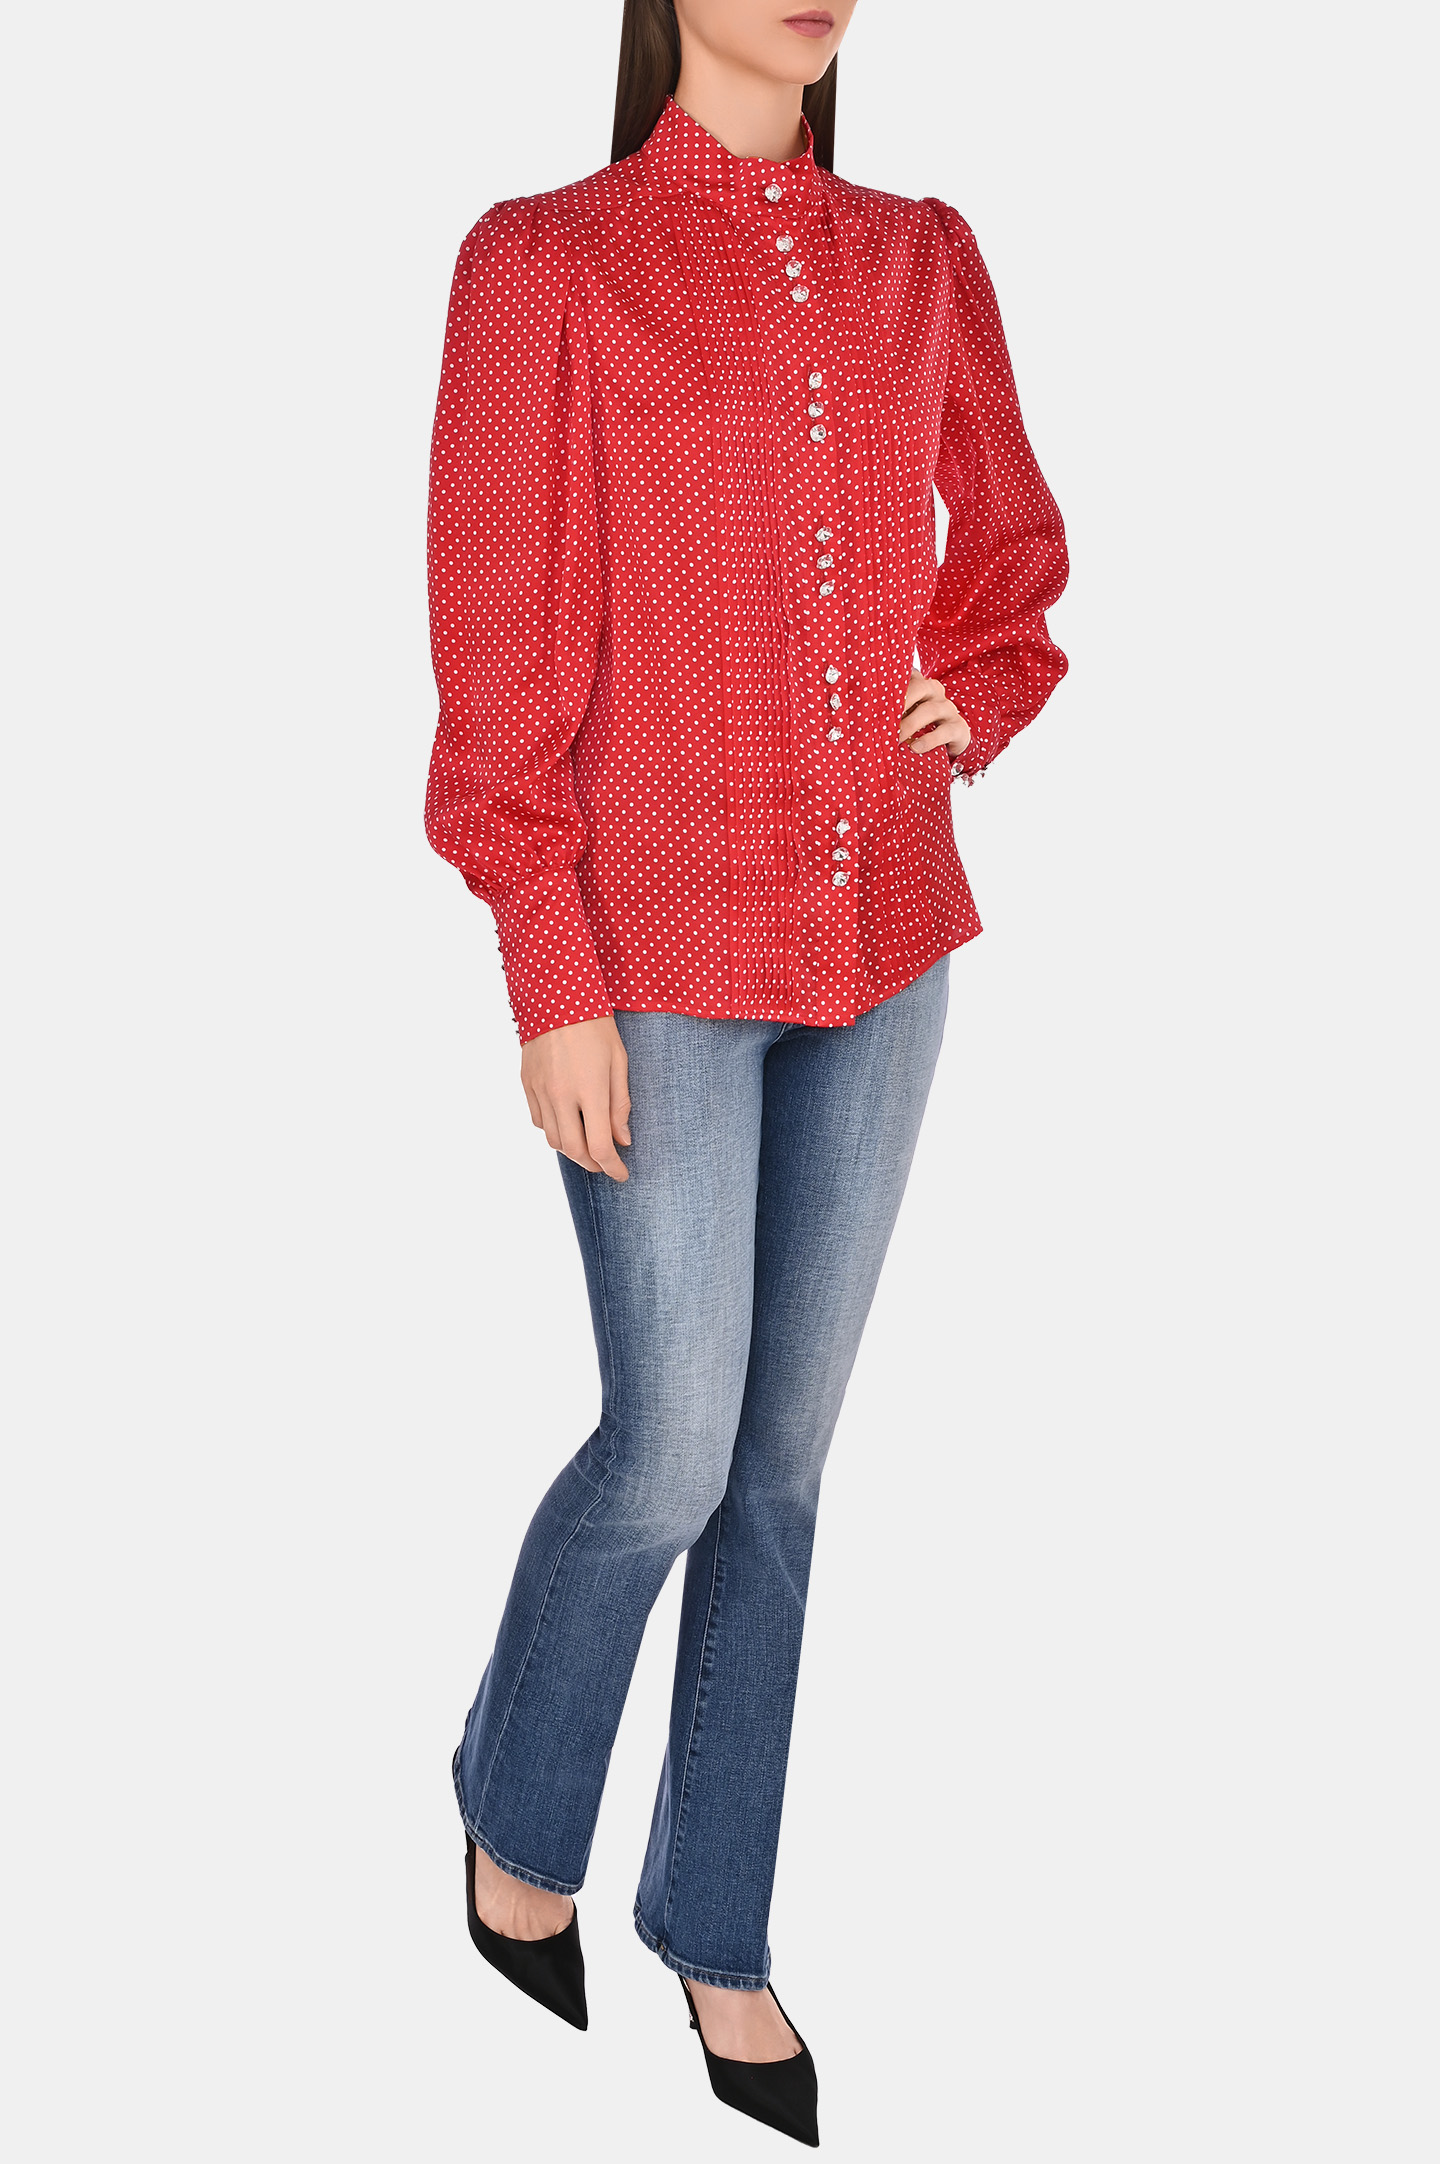 Блуза ALEXANDRE VAUTHIER 231SH1800 1808, цвет: Красный, Женский